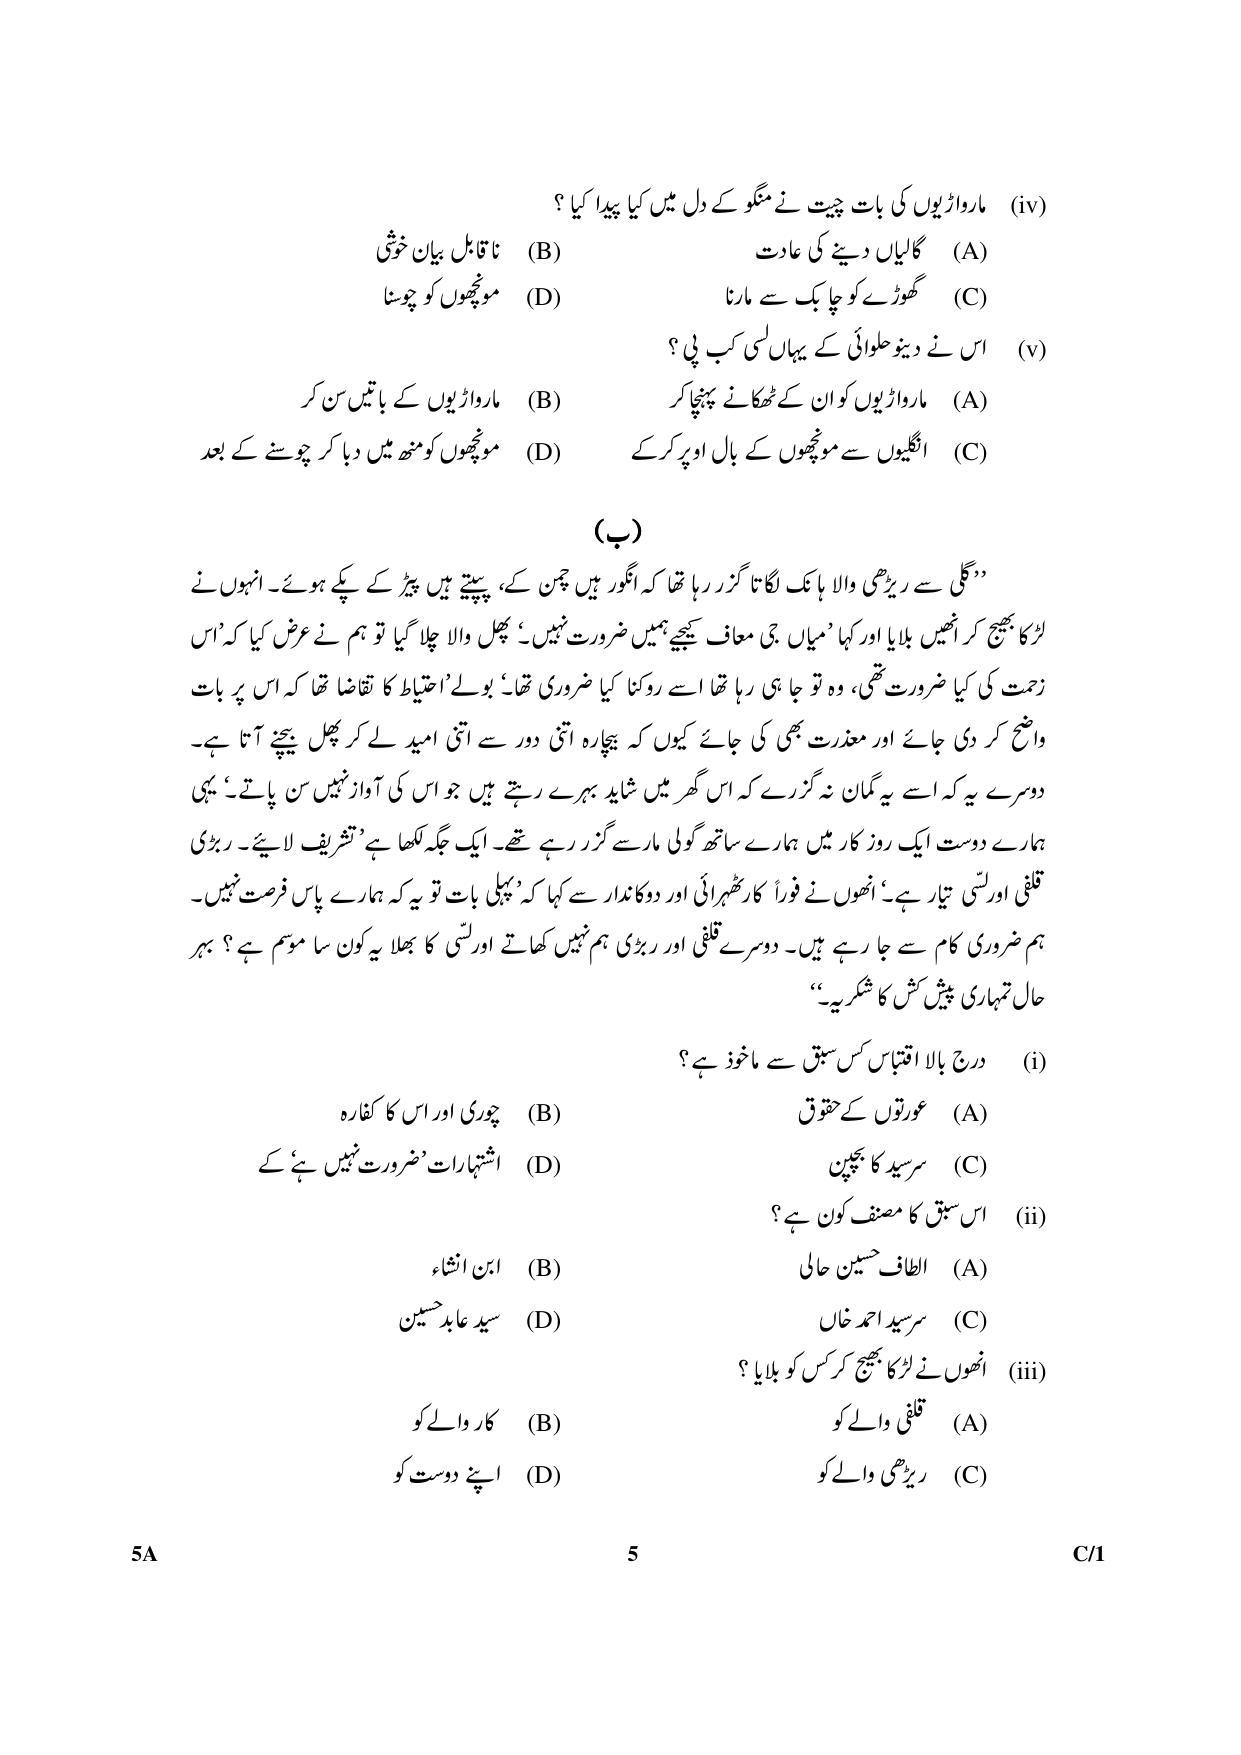 CBSE Class 10 5A Urdu (Course A) 2018 Compartment Question Paper - Page 5